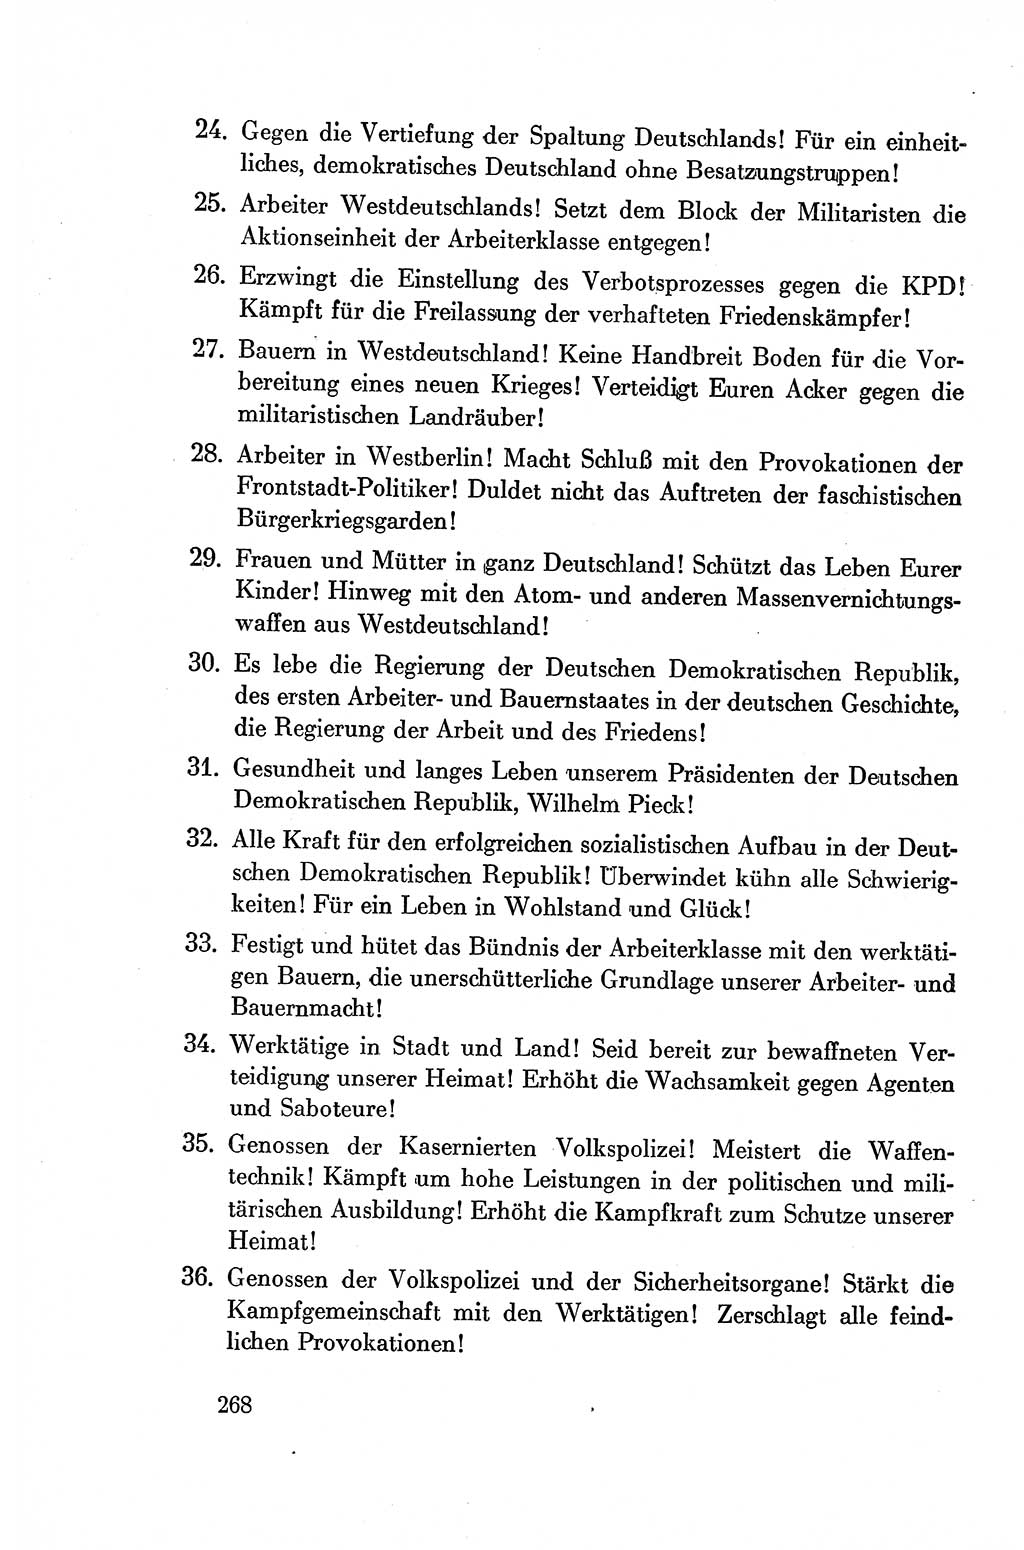 Dokumente der Sozialistischen Einheitspartei Deutschlands (SED) [Deutsche Demokratische Republik (DDR)] 1954-1955, Seite 268 (Dok. SED DDR 1954-1955, S. 268)